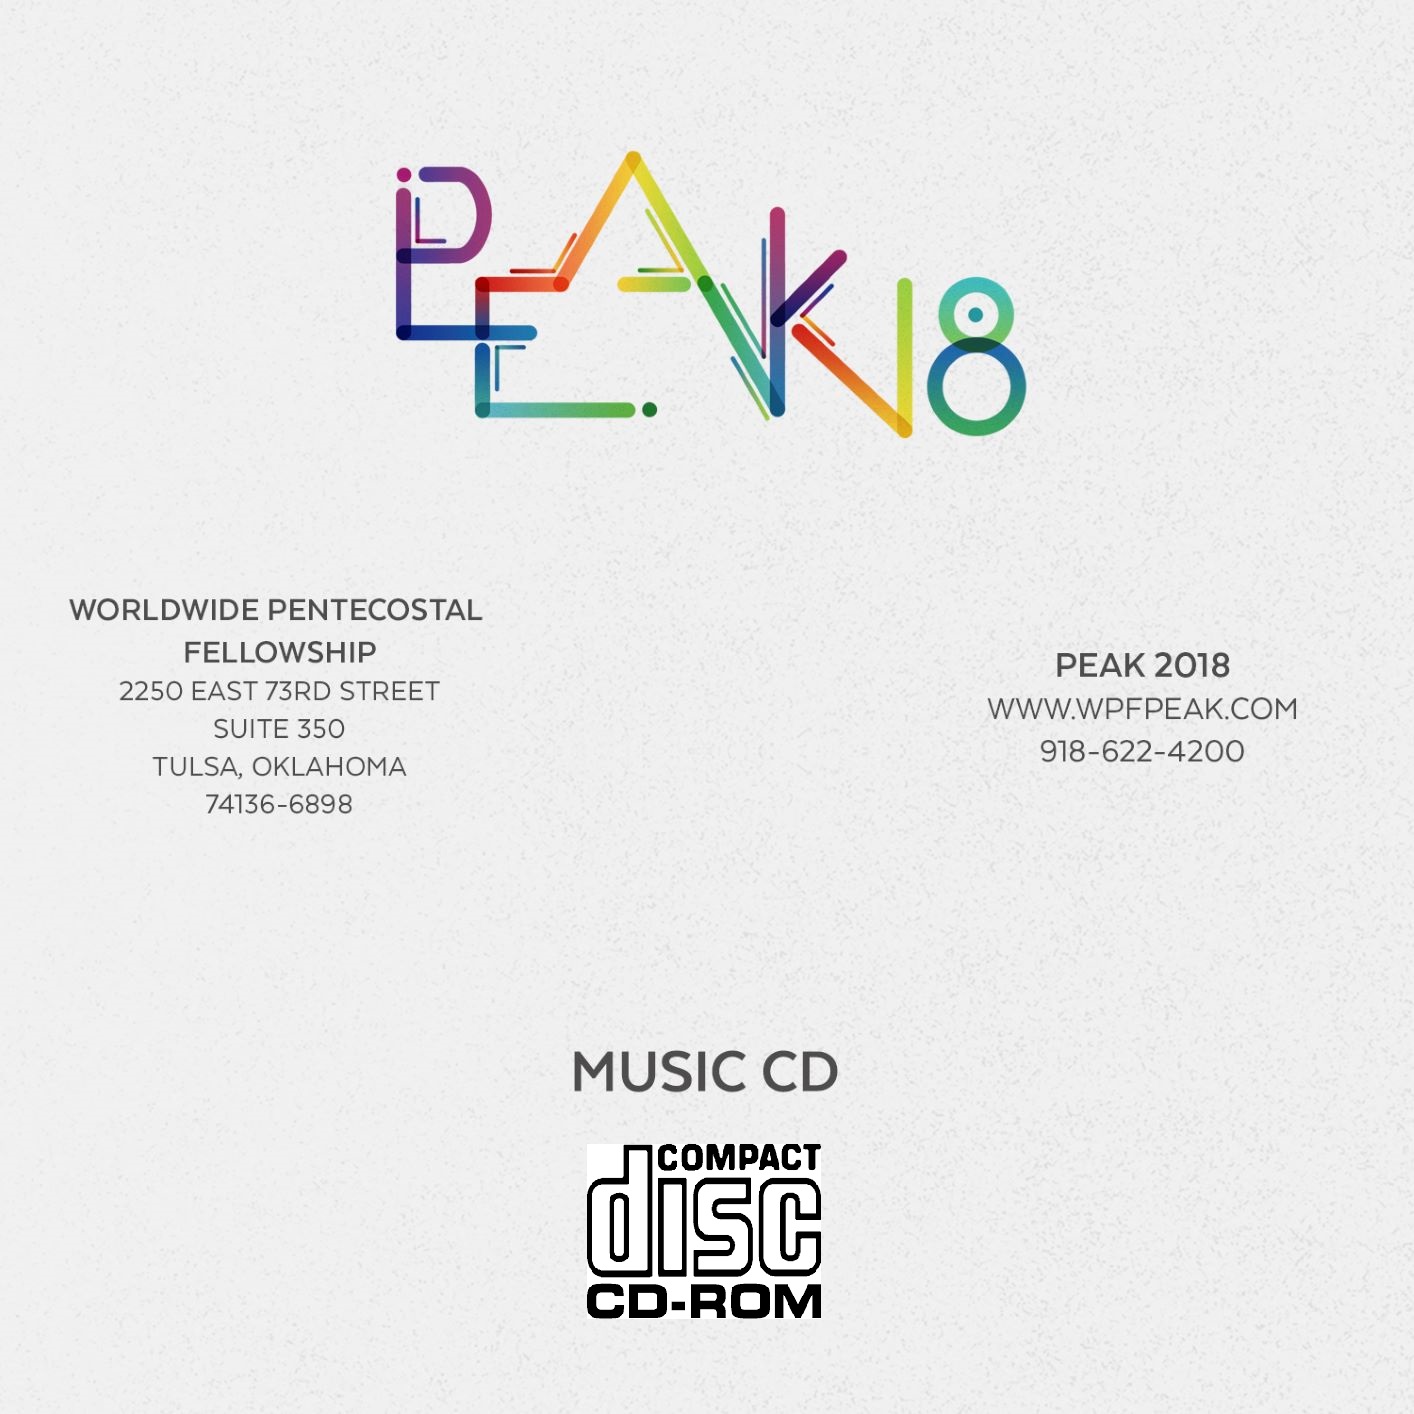 2018 PEAK Single CD